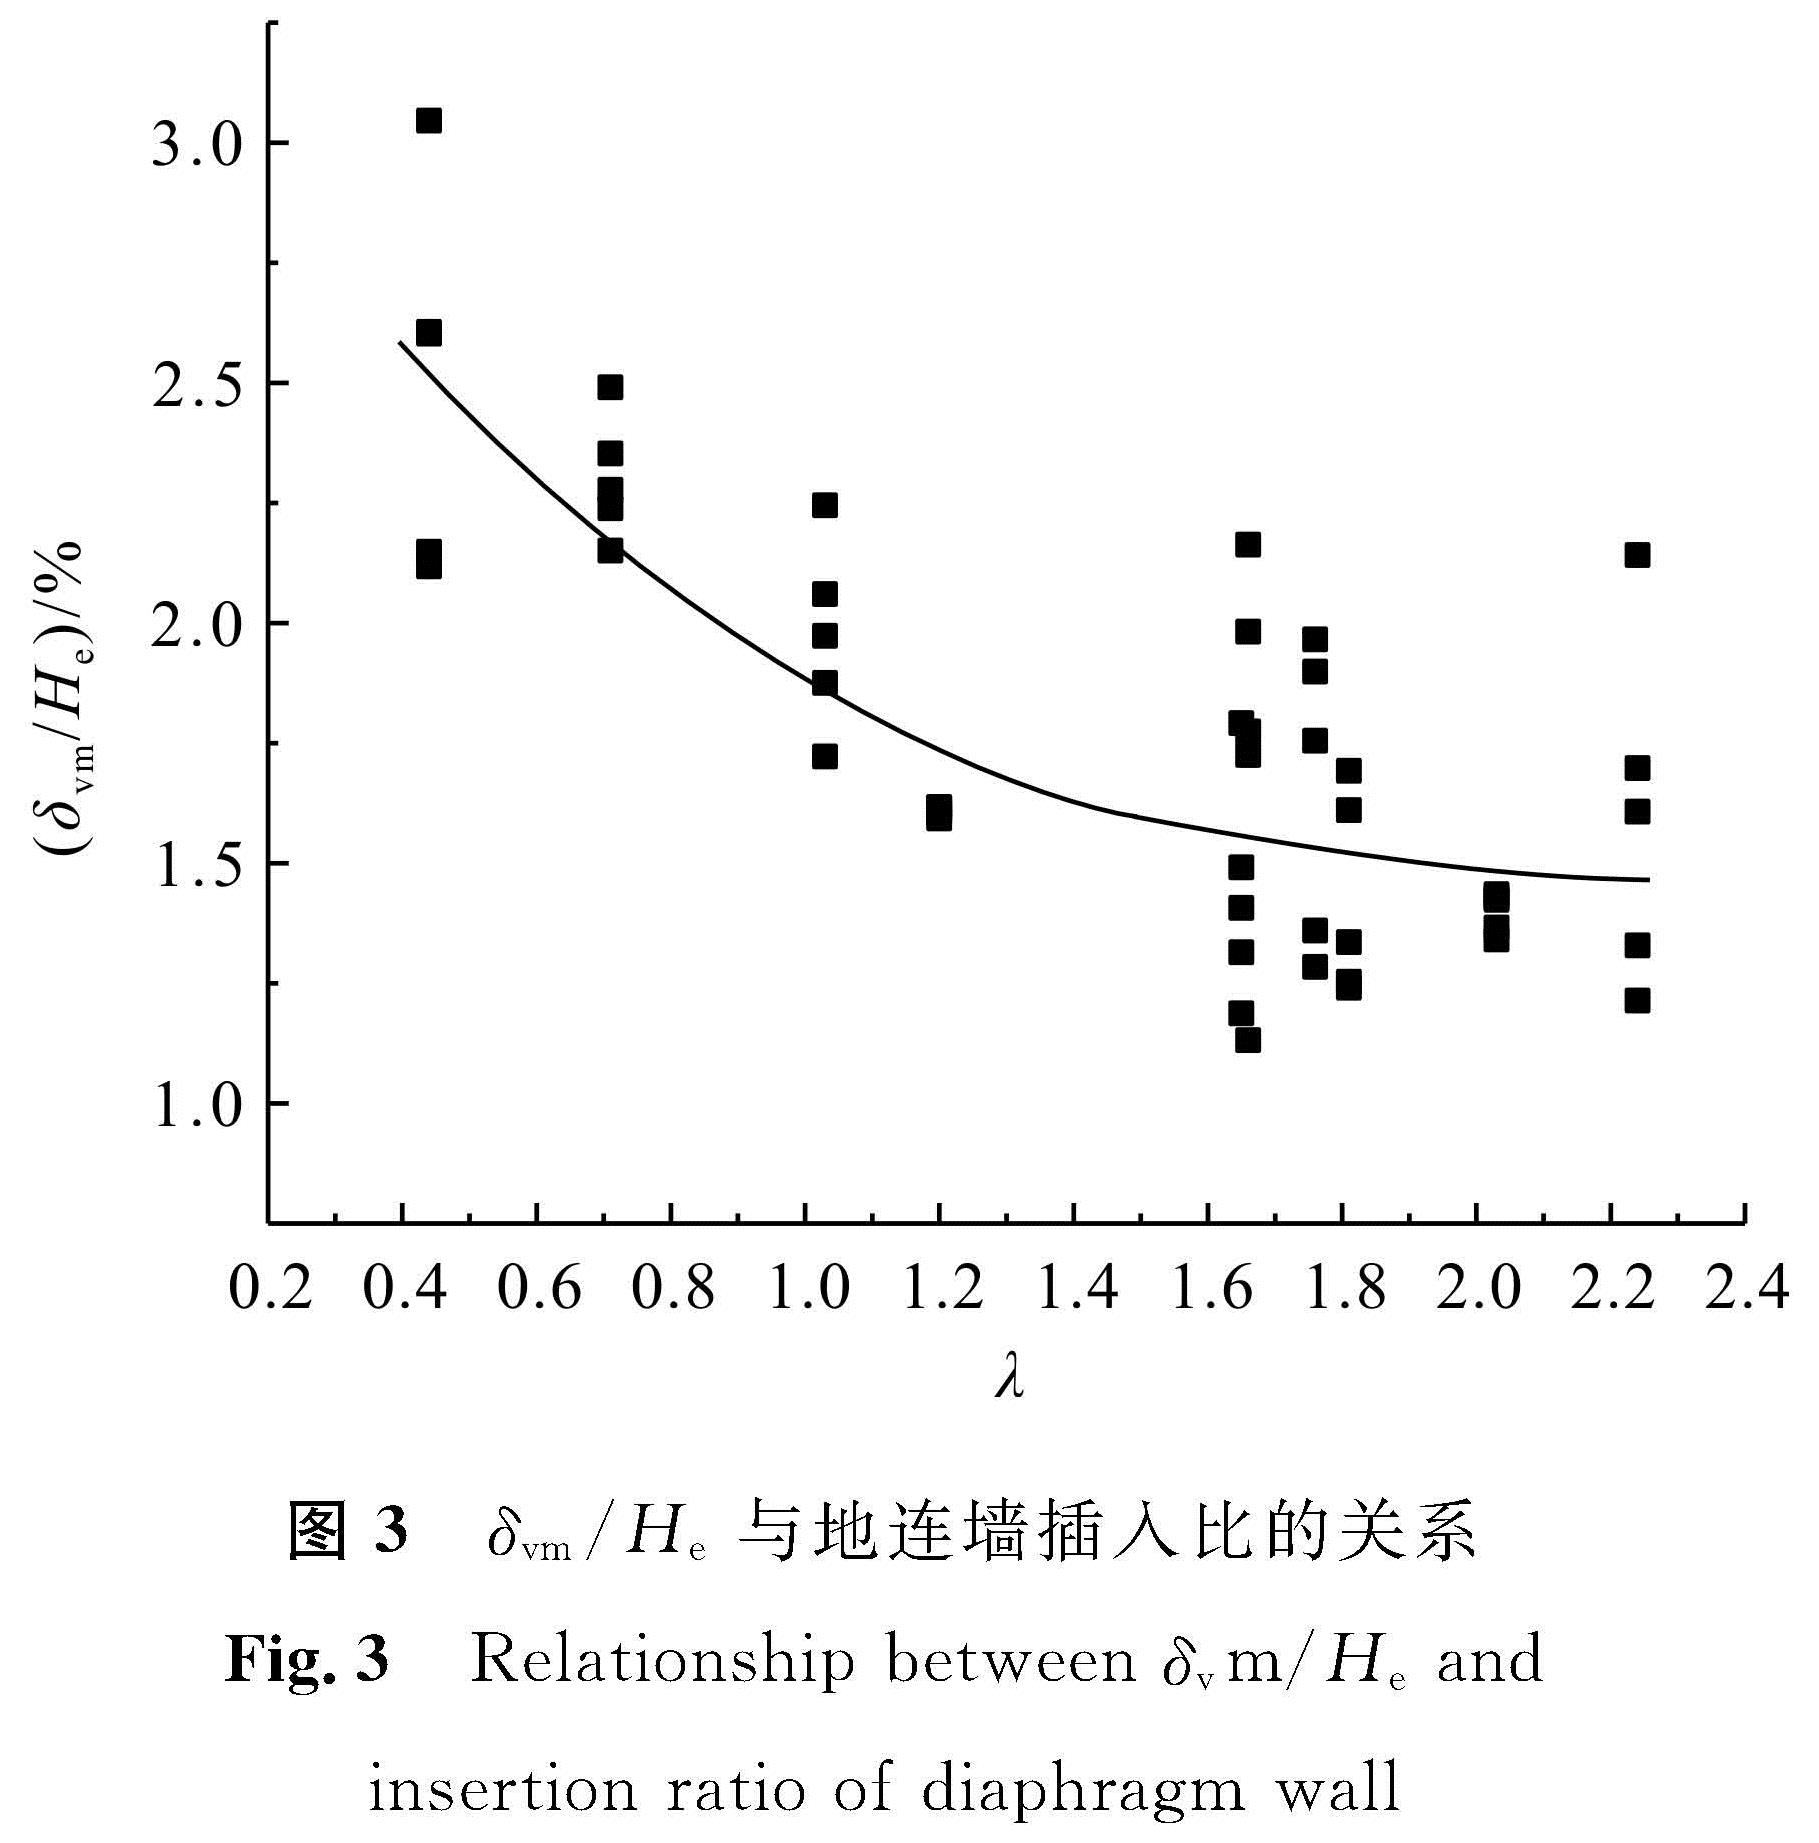 图3 δvm/He与地连墙插入比的关系<br/>Fig.3 Relationship between δvm/He and insertion ratio of diaphragm wall